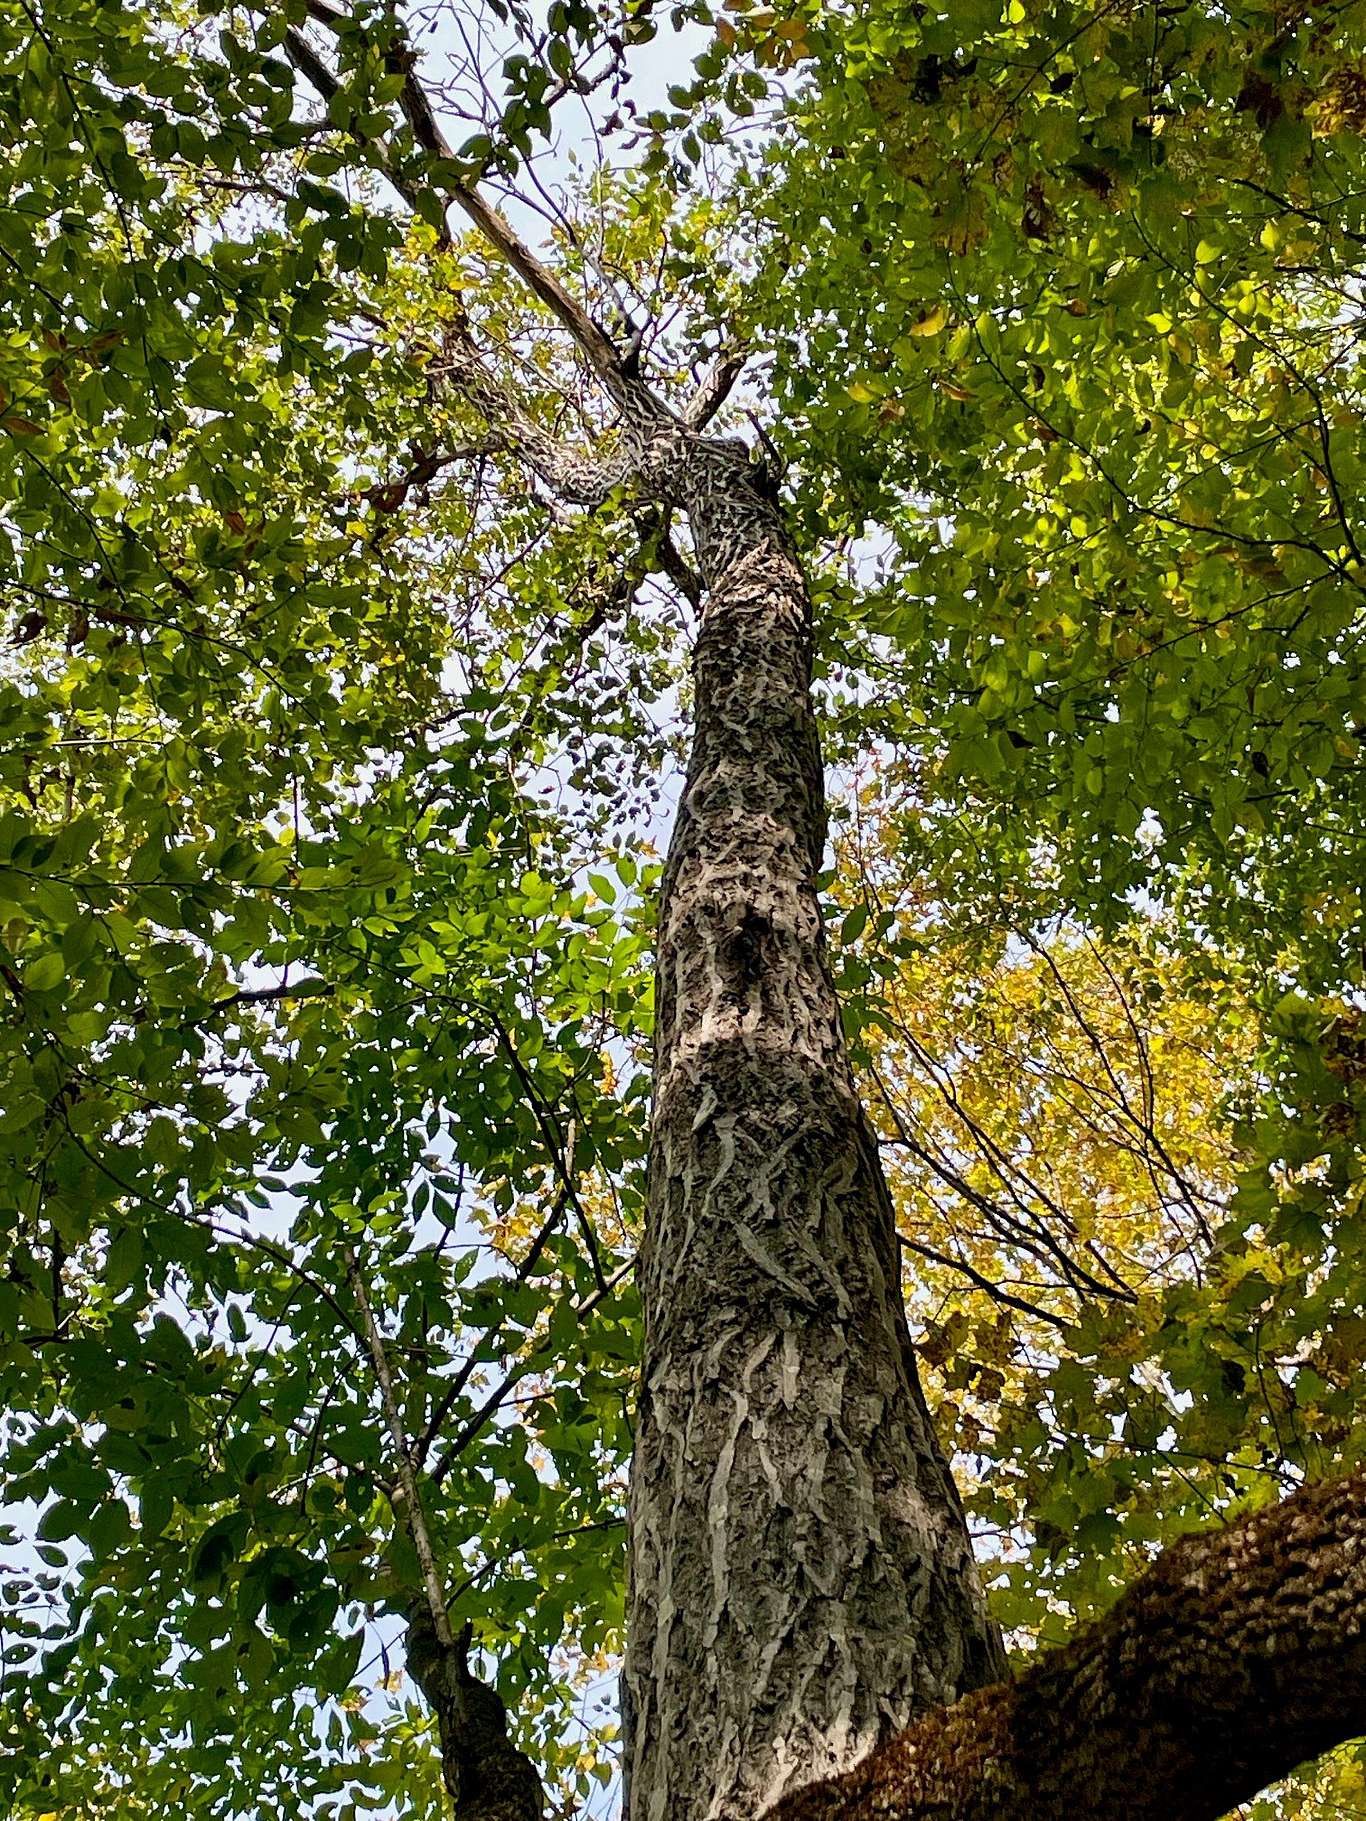 Looking skyward up a Butternut Tree trunk